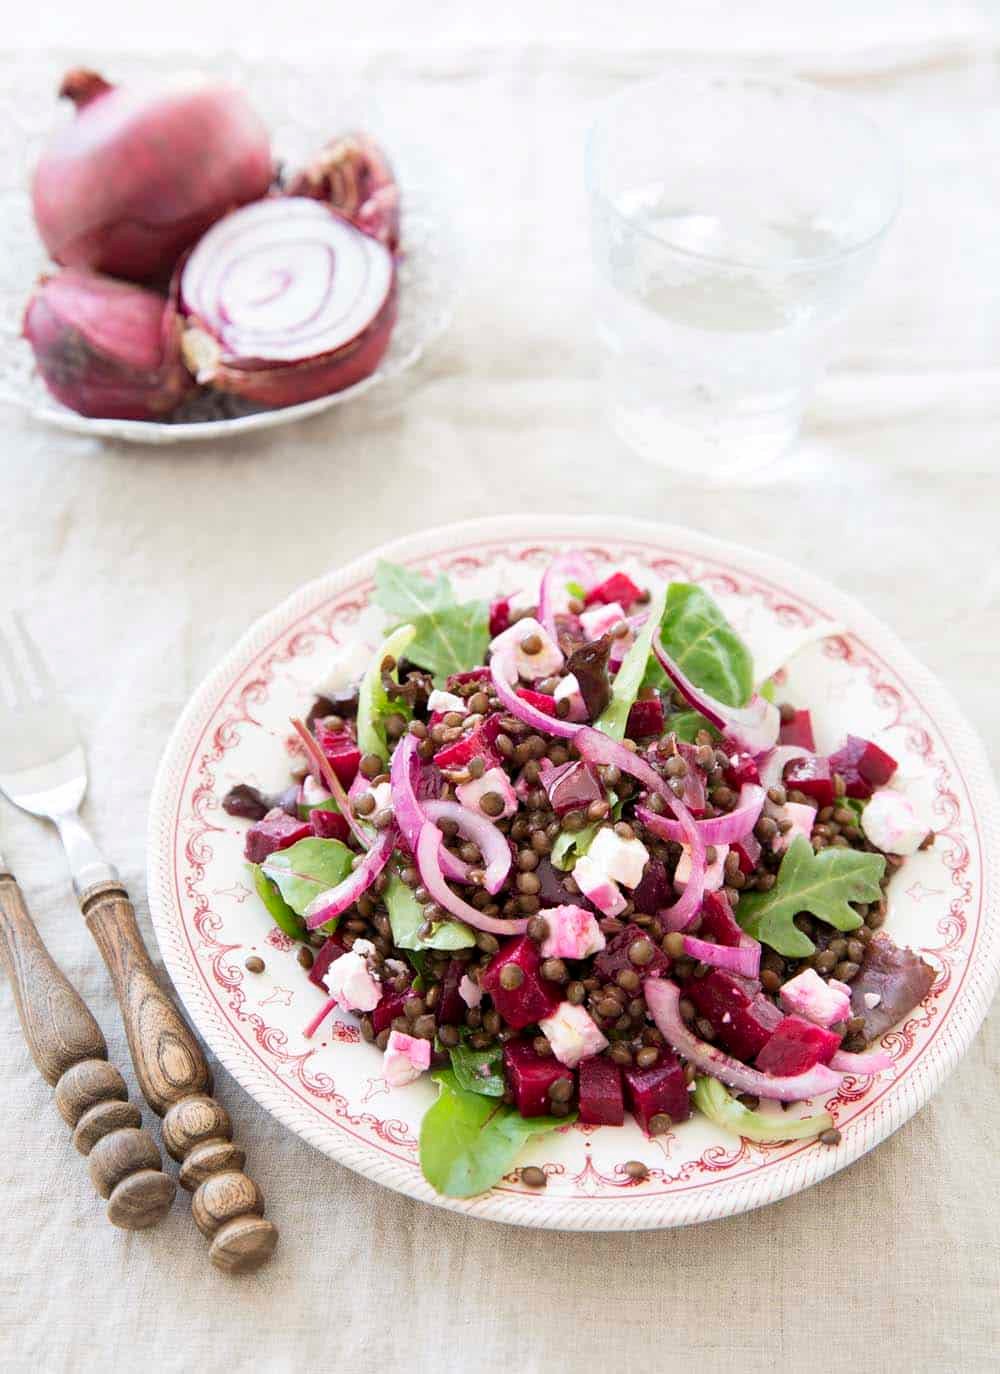 Recette végétarienne - Salade de lentilles froides - menu-vegetarien